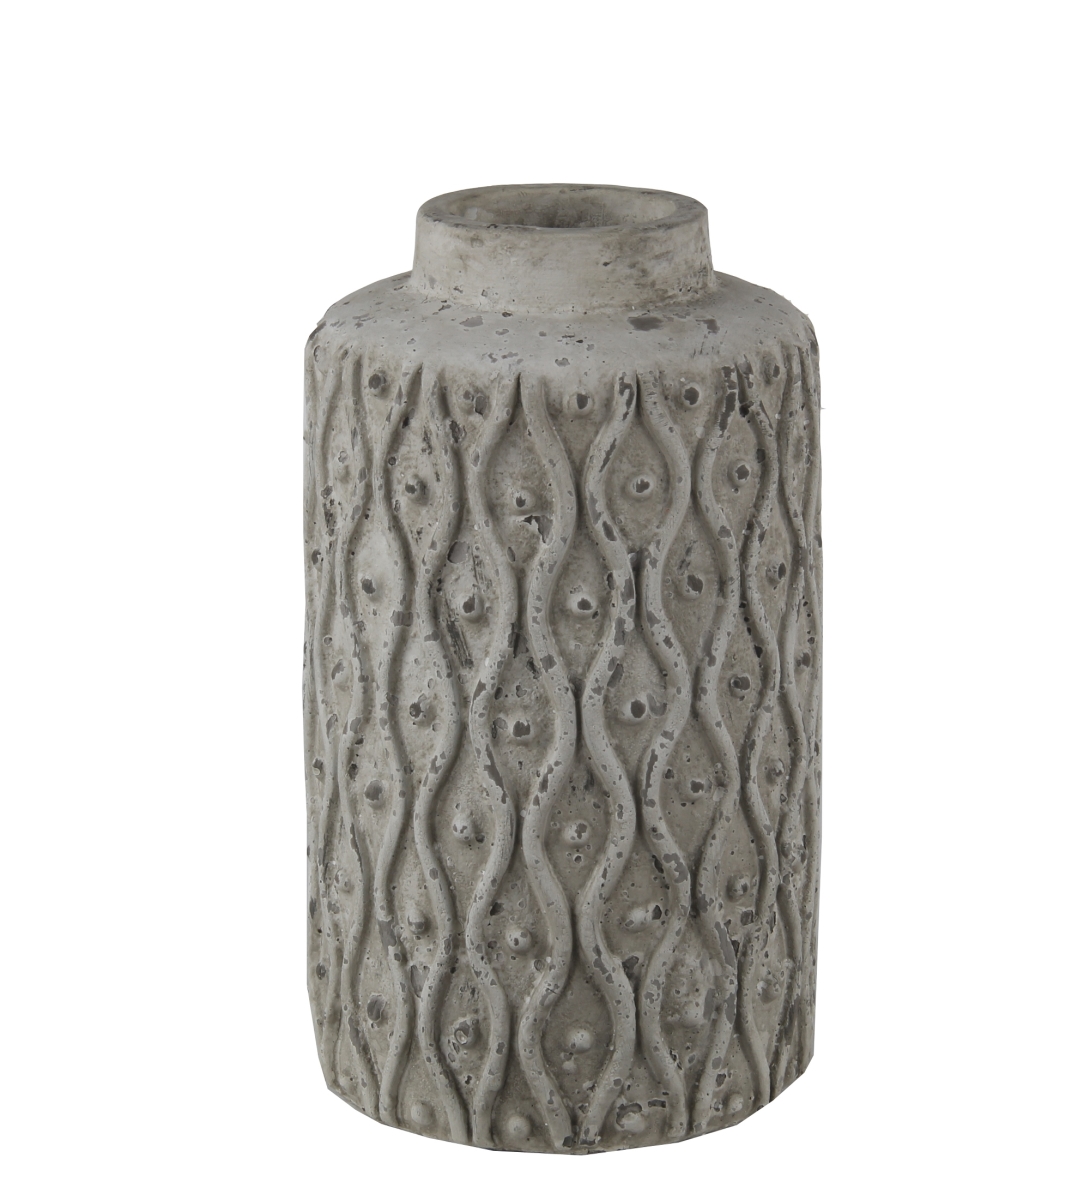 34441 6 X 6 X 10.5 In. Transitional Ceramic Vase, Stone